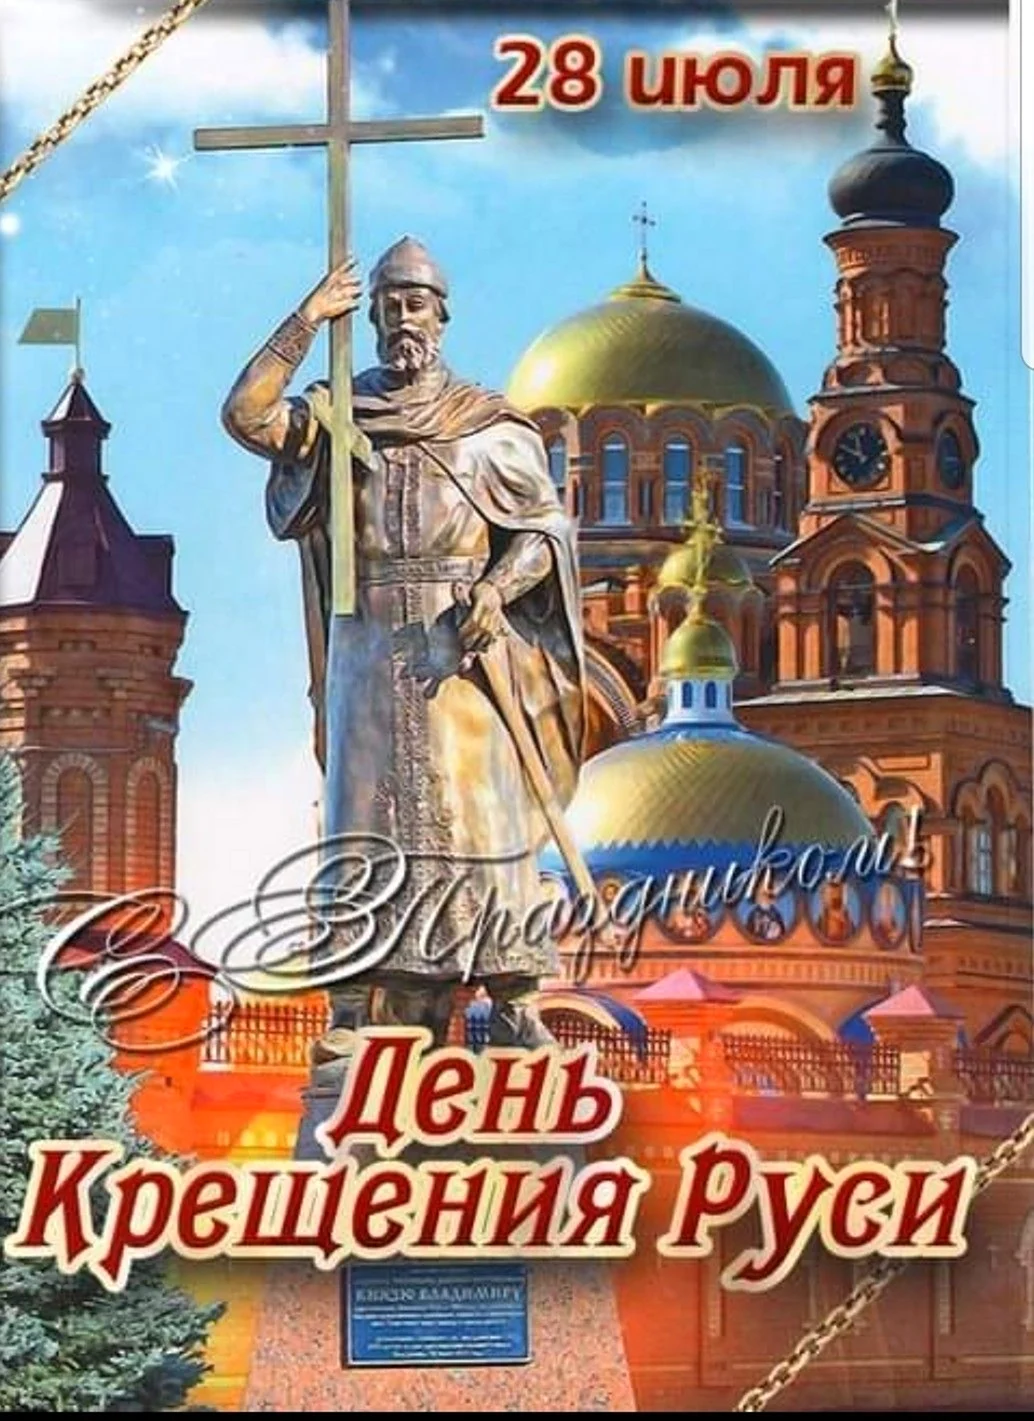 Святой равноапостольный князь Владимир памятник